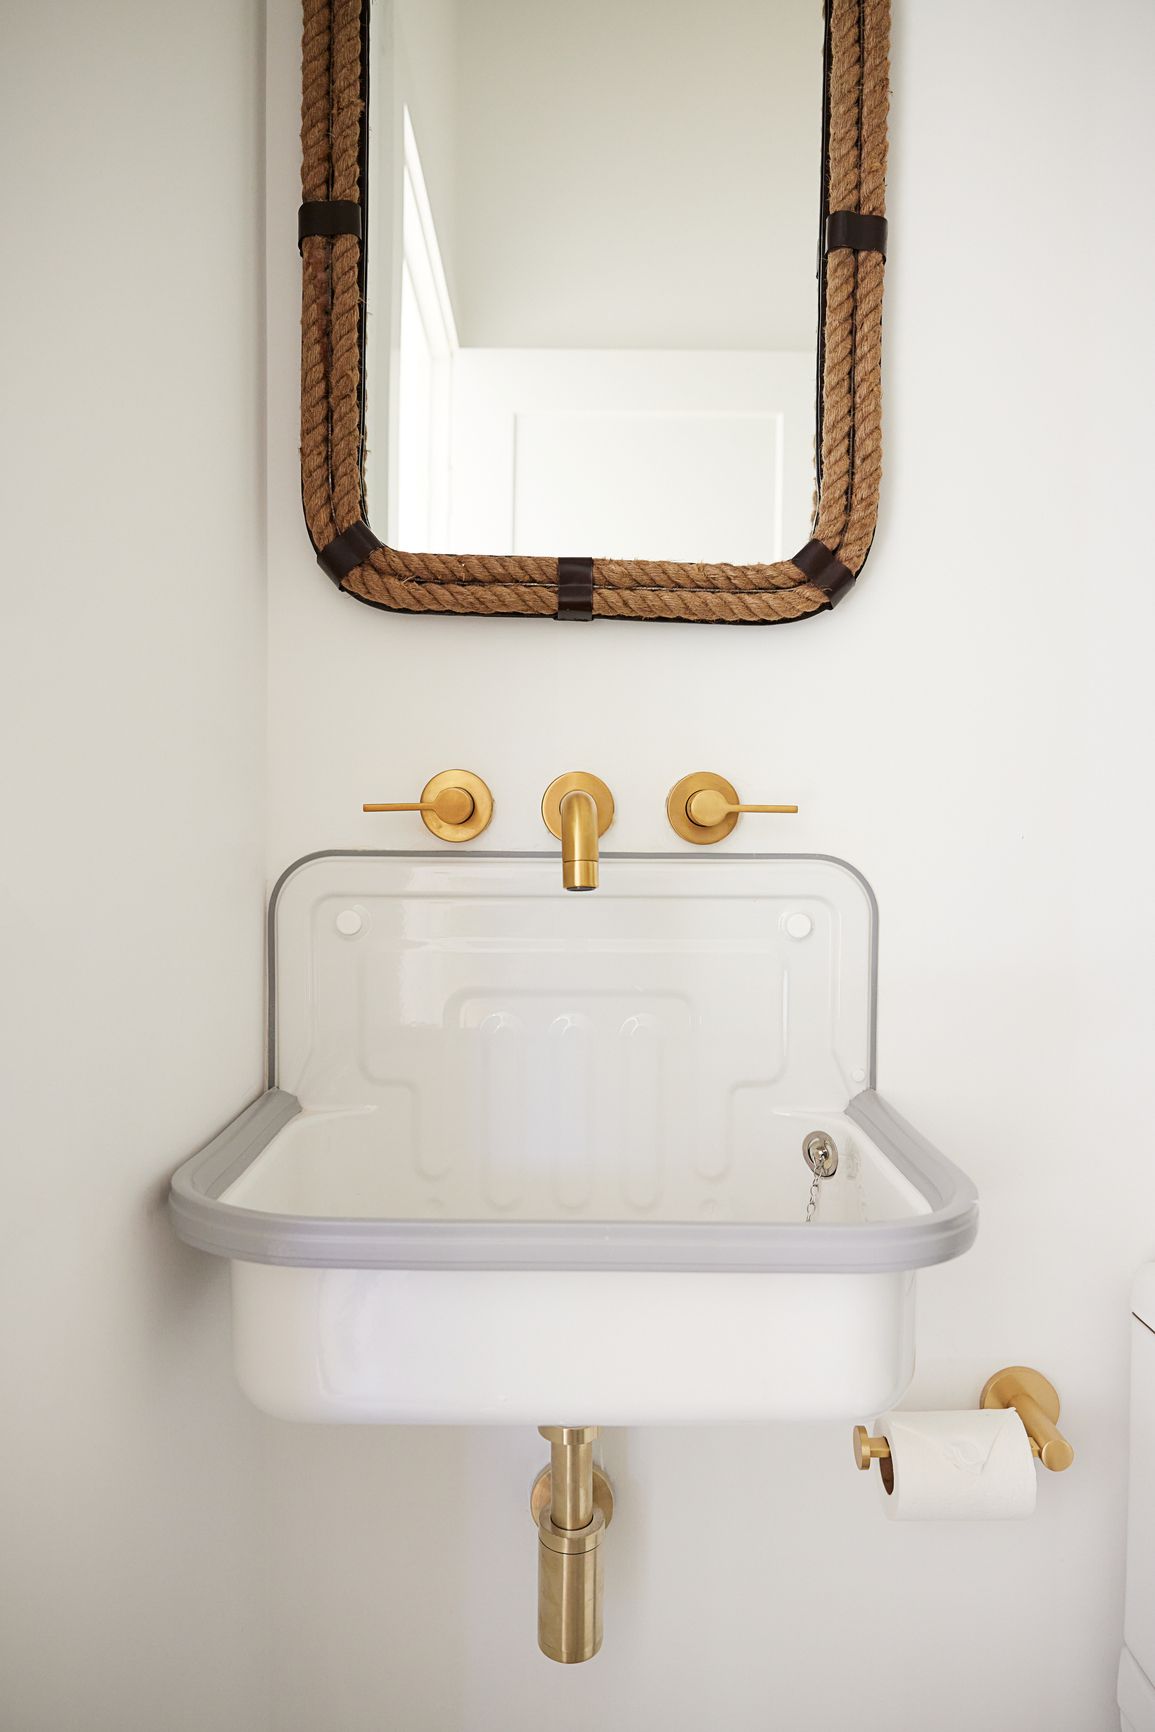 Évier de ferme dans une salle de bain avec miroir nautique